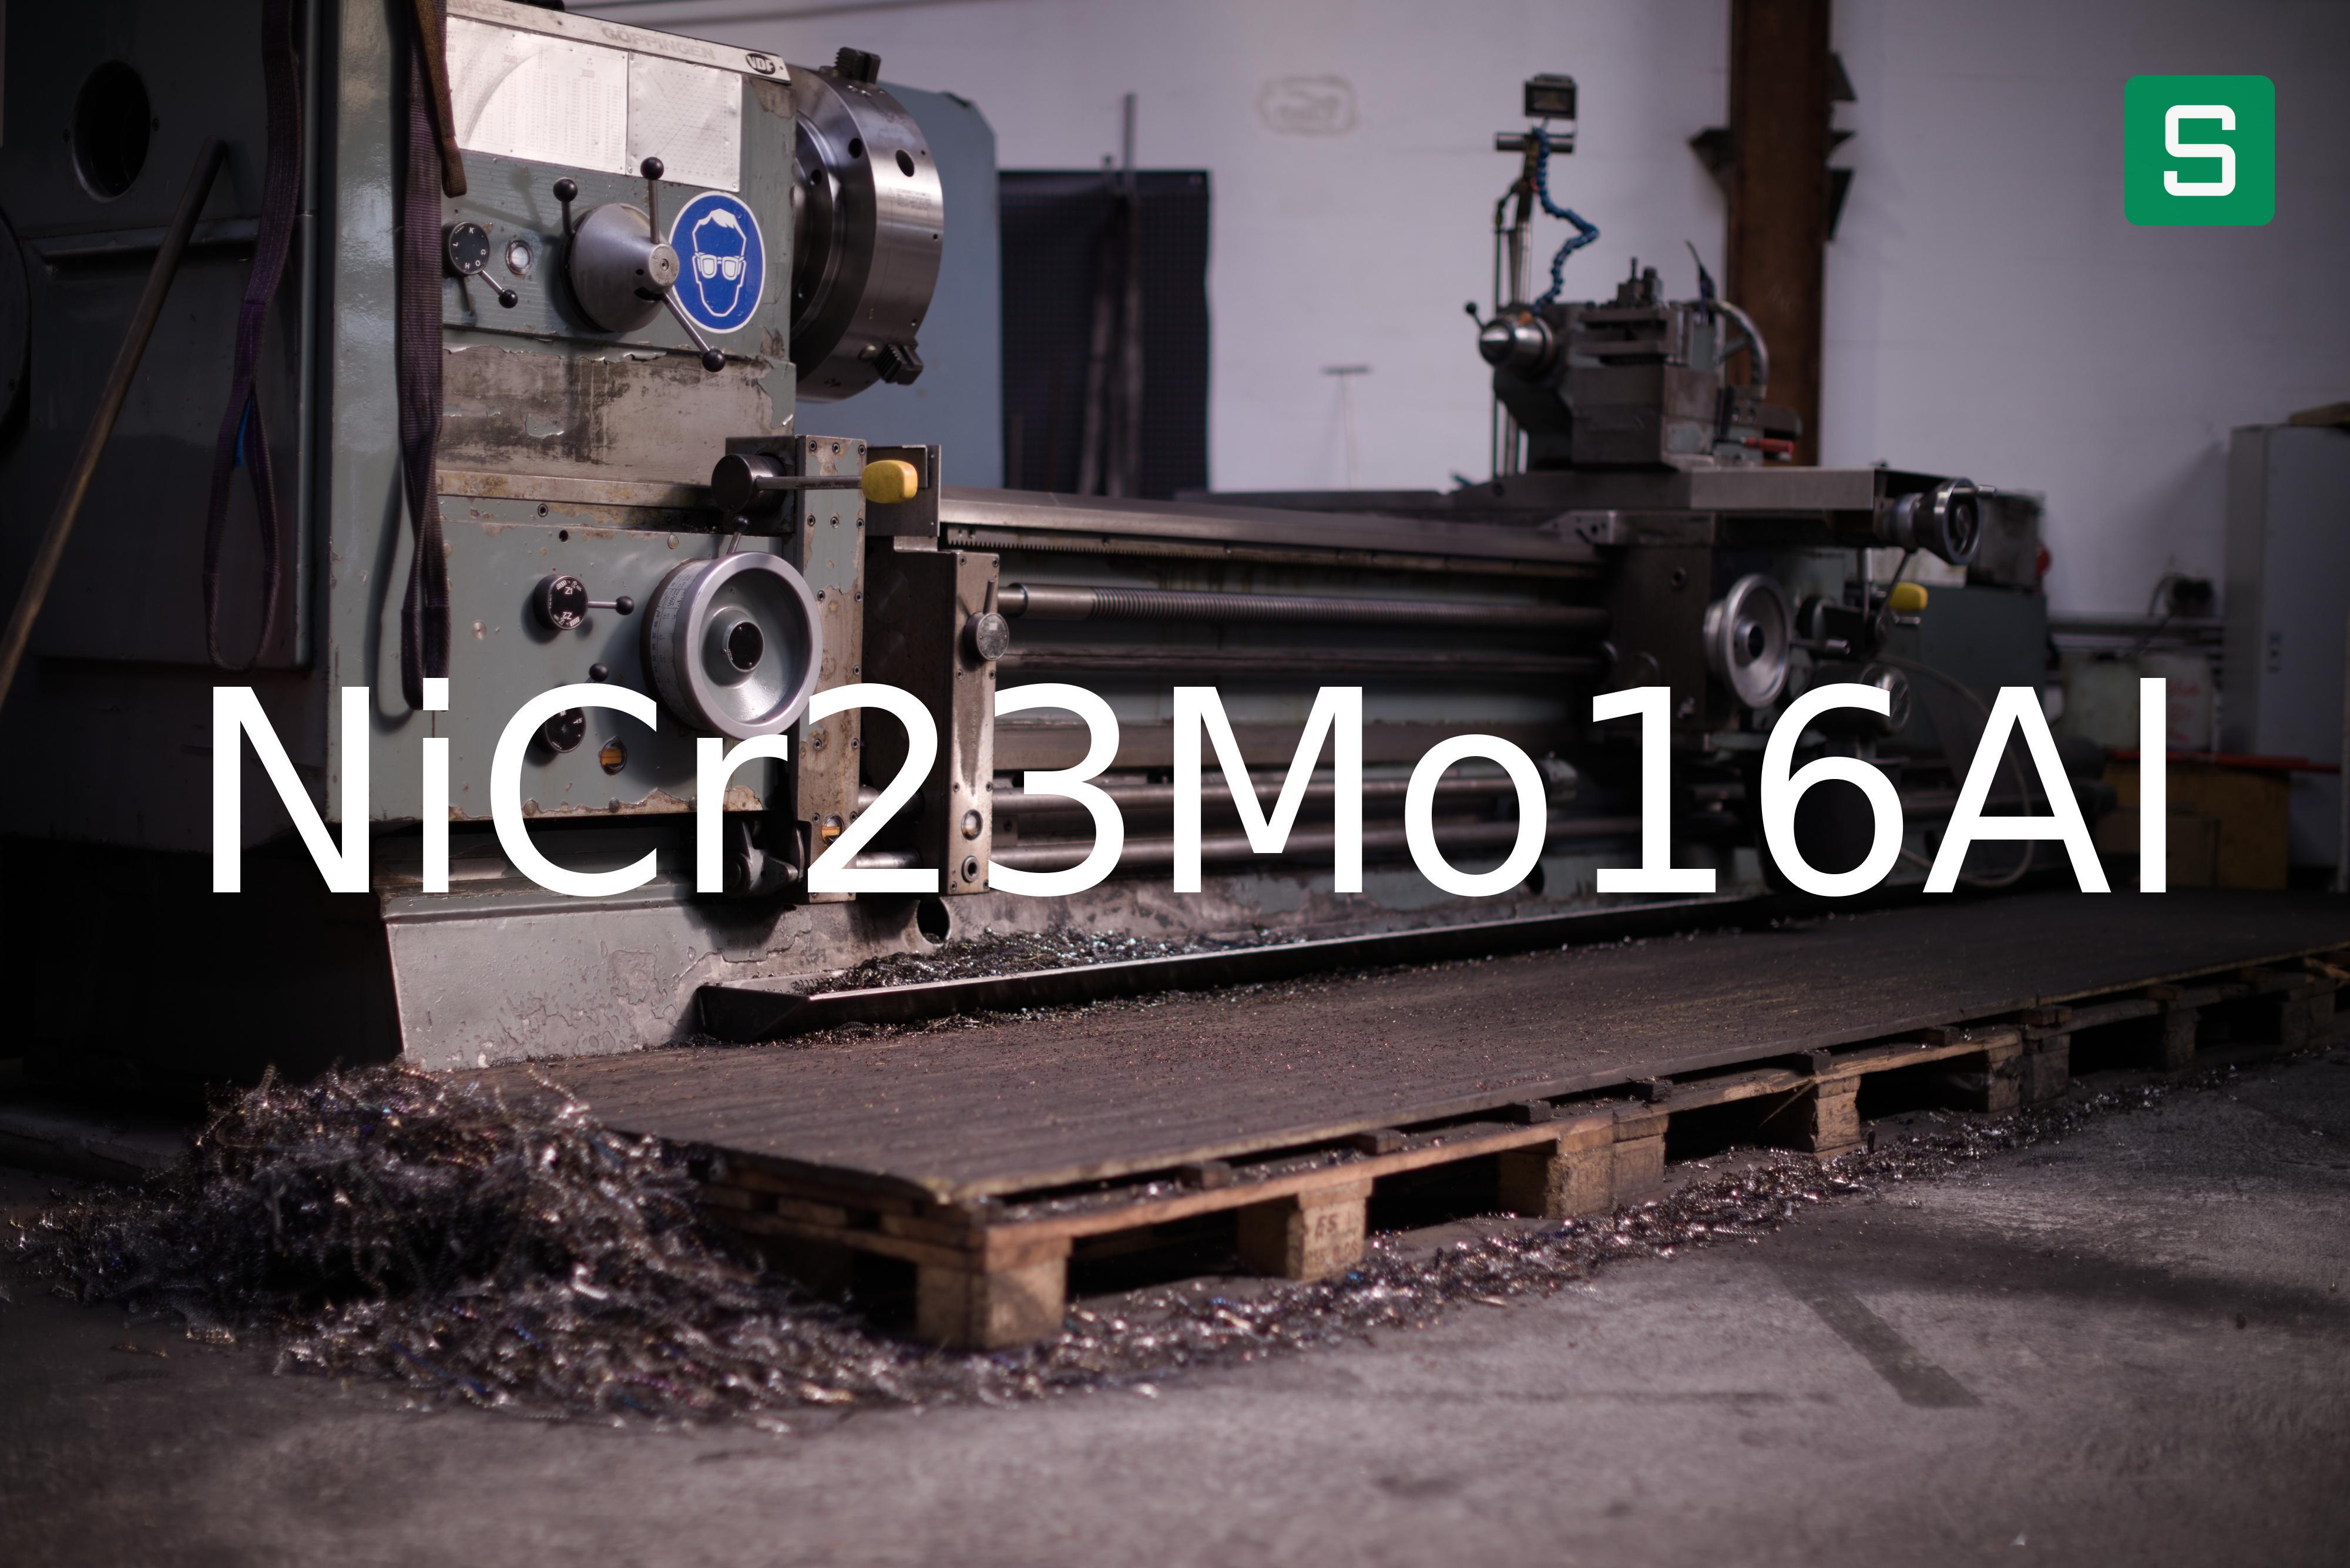 Steel Material: NiCr23Mo16Al